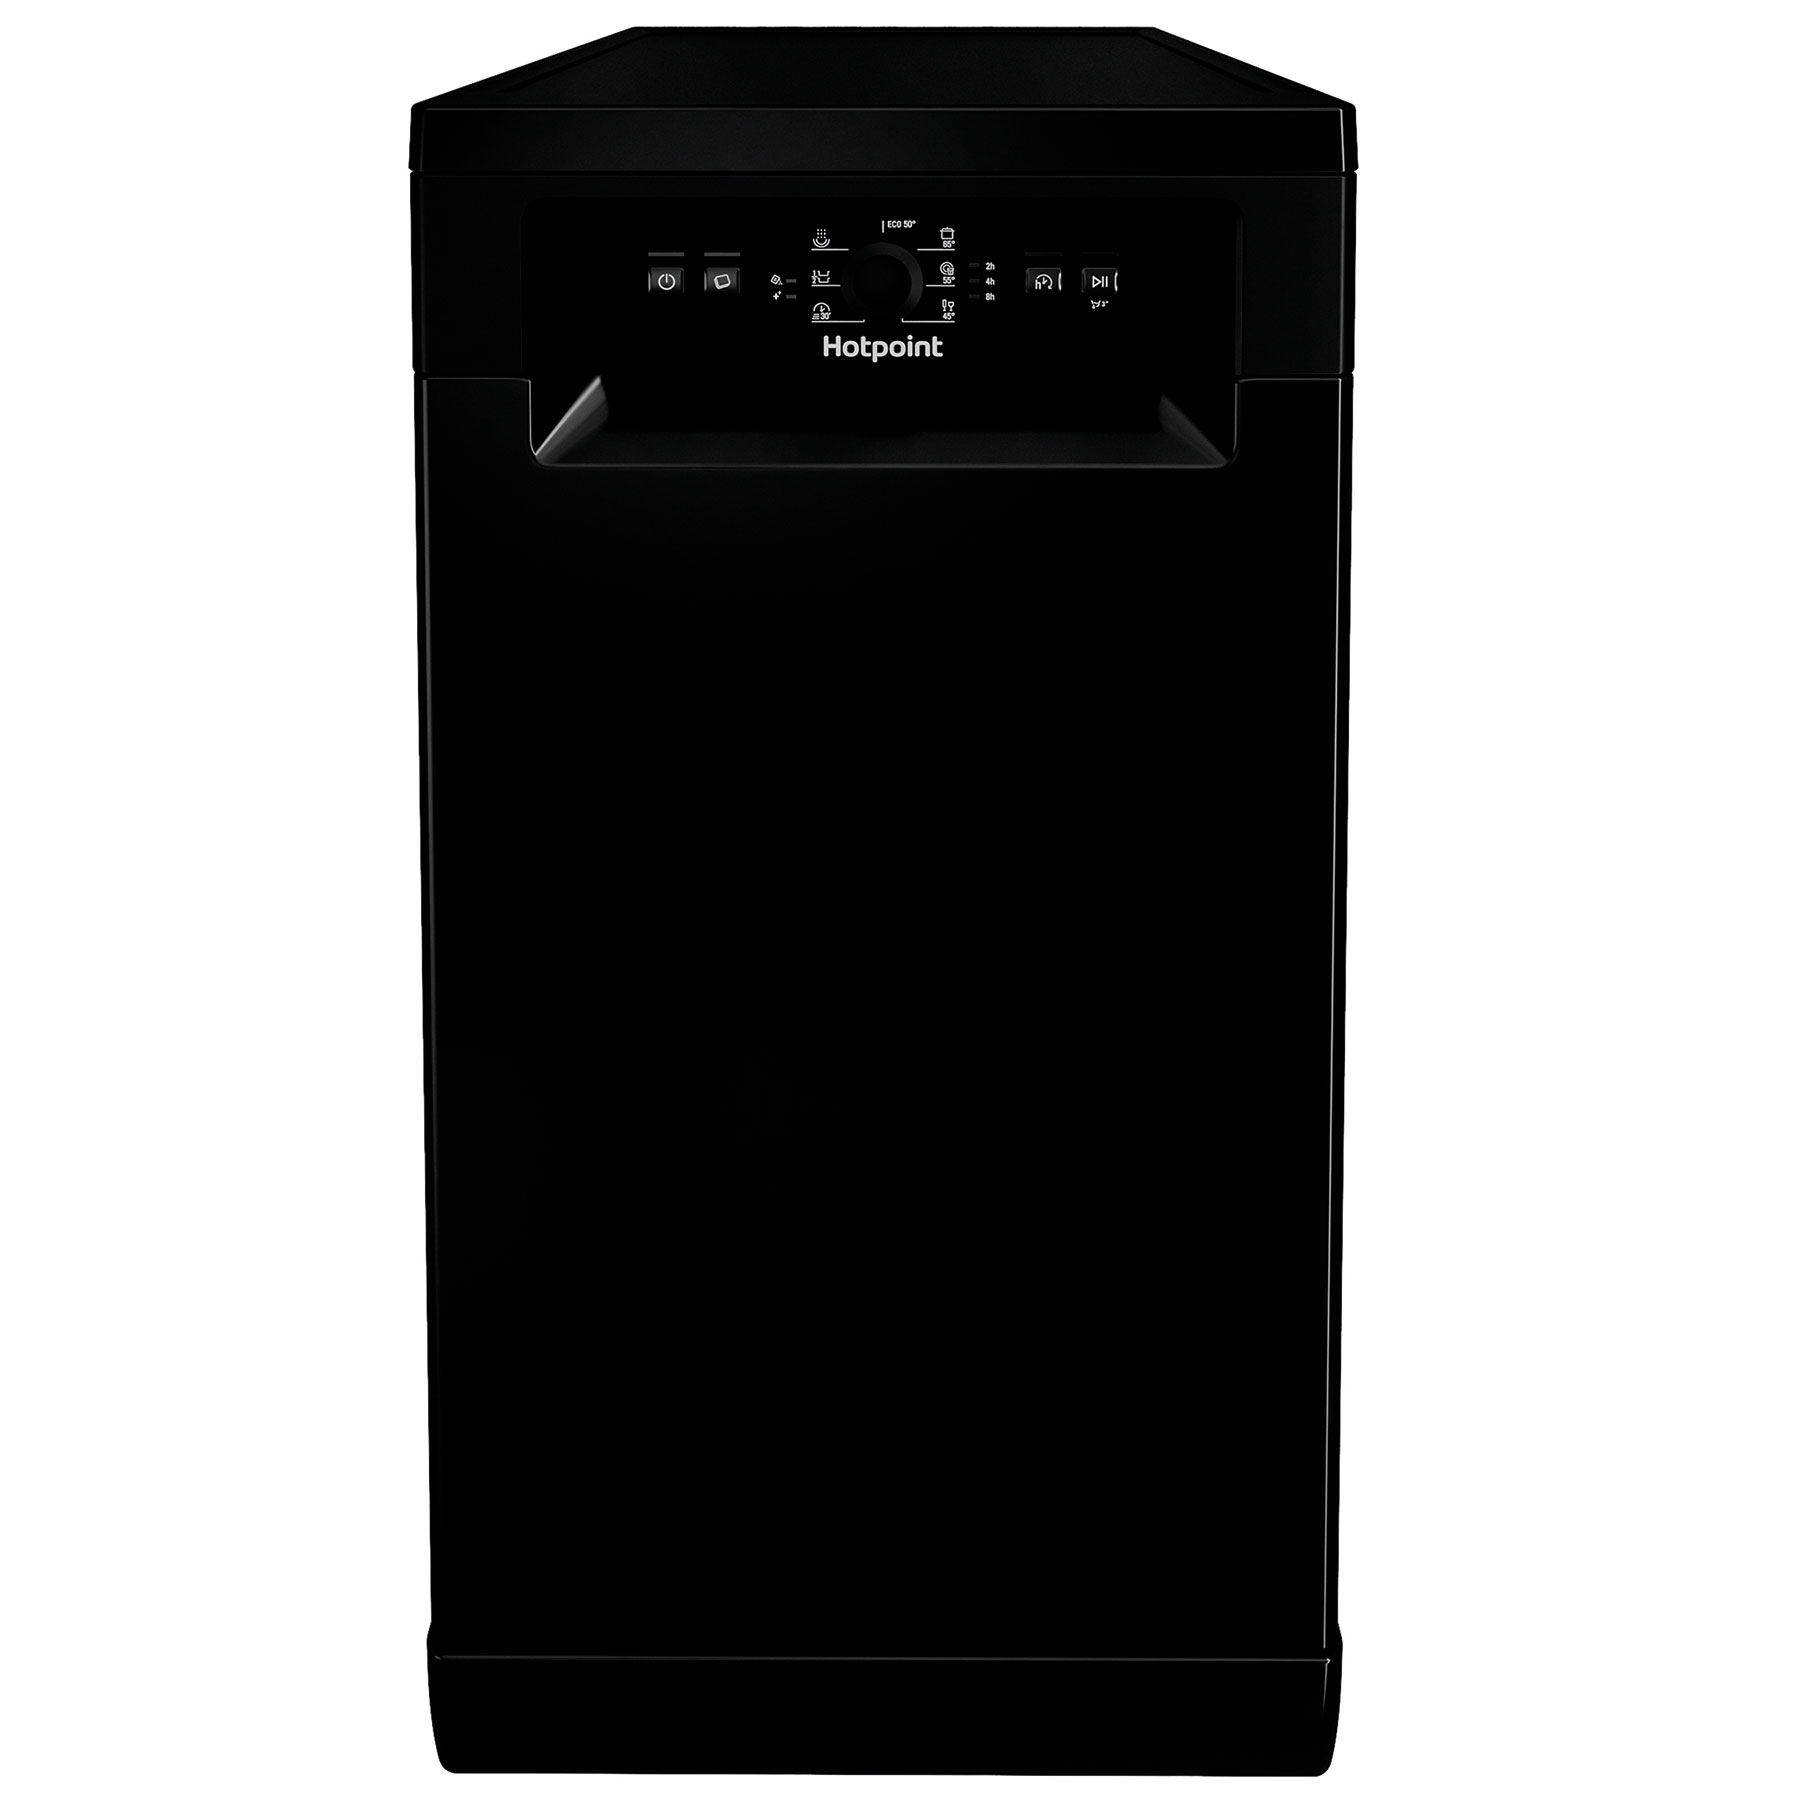 Image of Hotpoint HF9E1B19BUK 45cm Slimline Dishwasher Black 9 Place Setting F